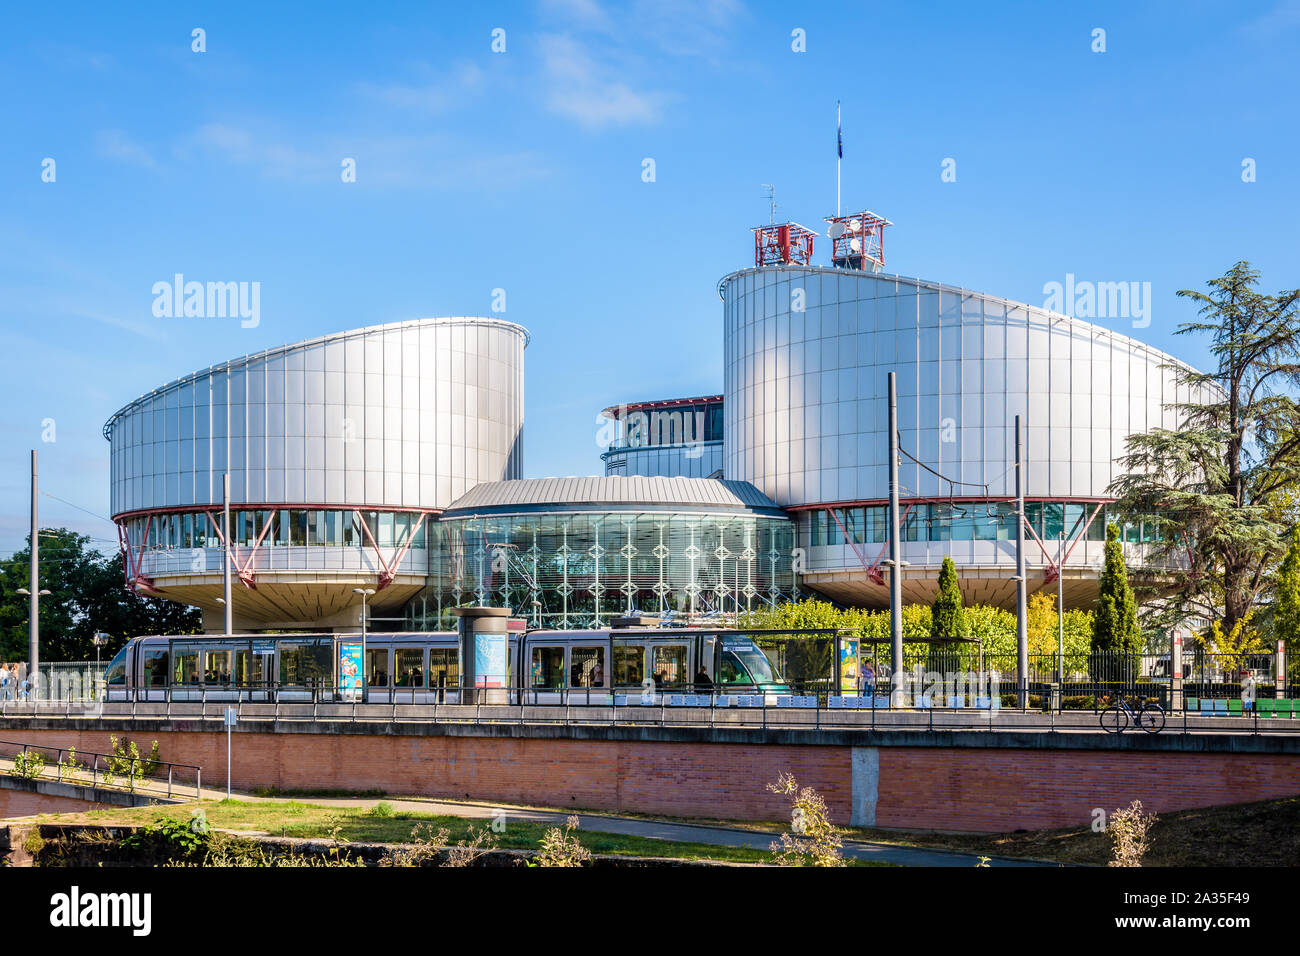 Un tramway s'arrête à la 'Droits de l'Homme' de la station de tramway en face de l'immeuble de la Cour européenne des Droits de l'Homme à Strasbourg, France. Banque D'Images